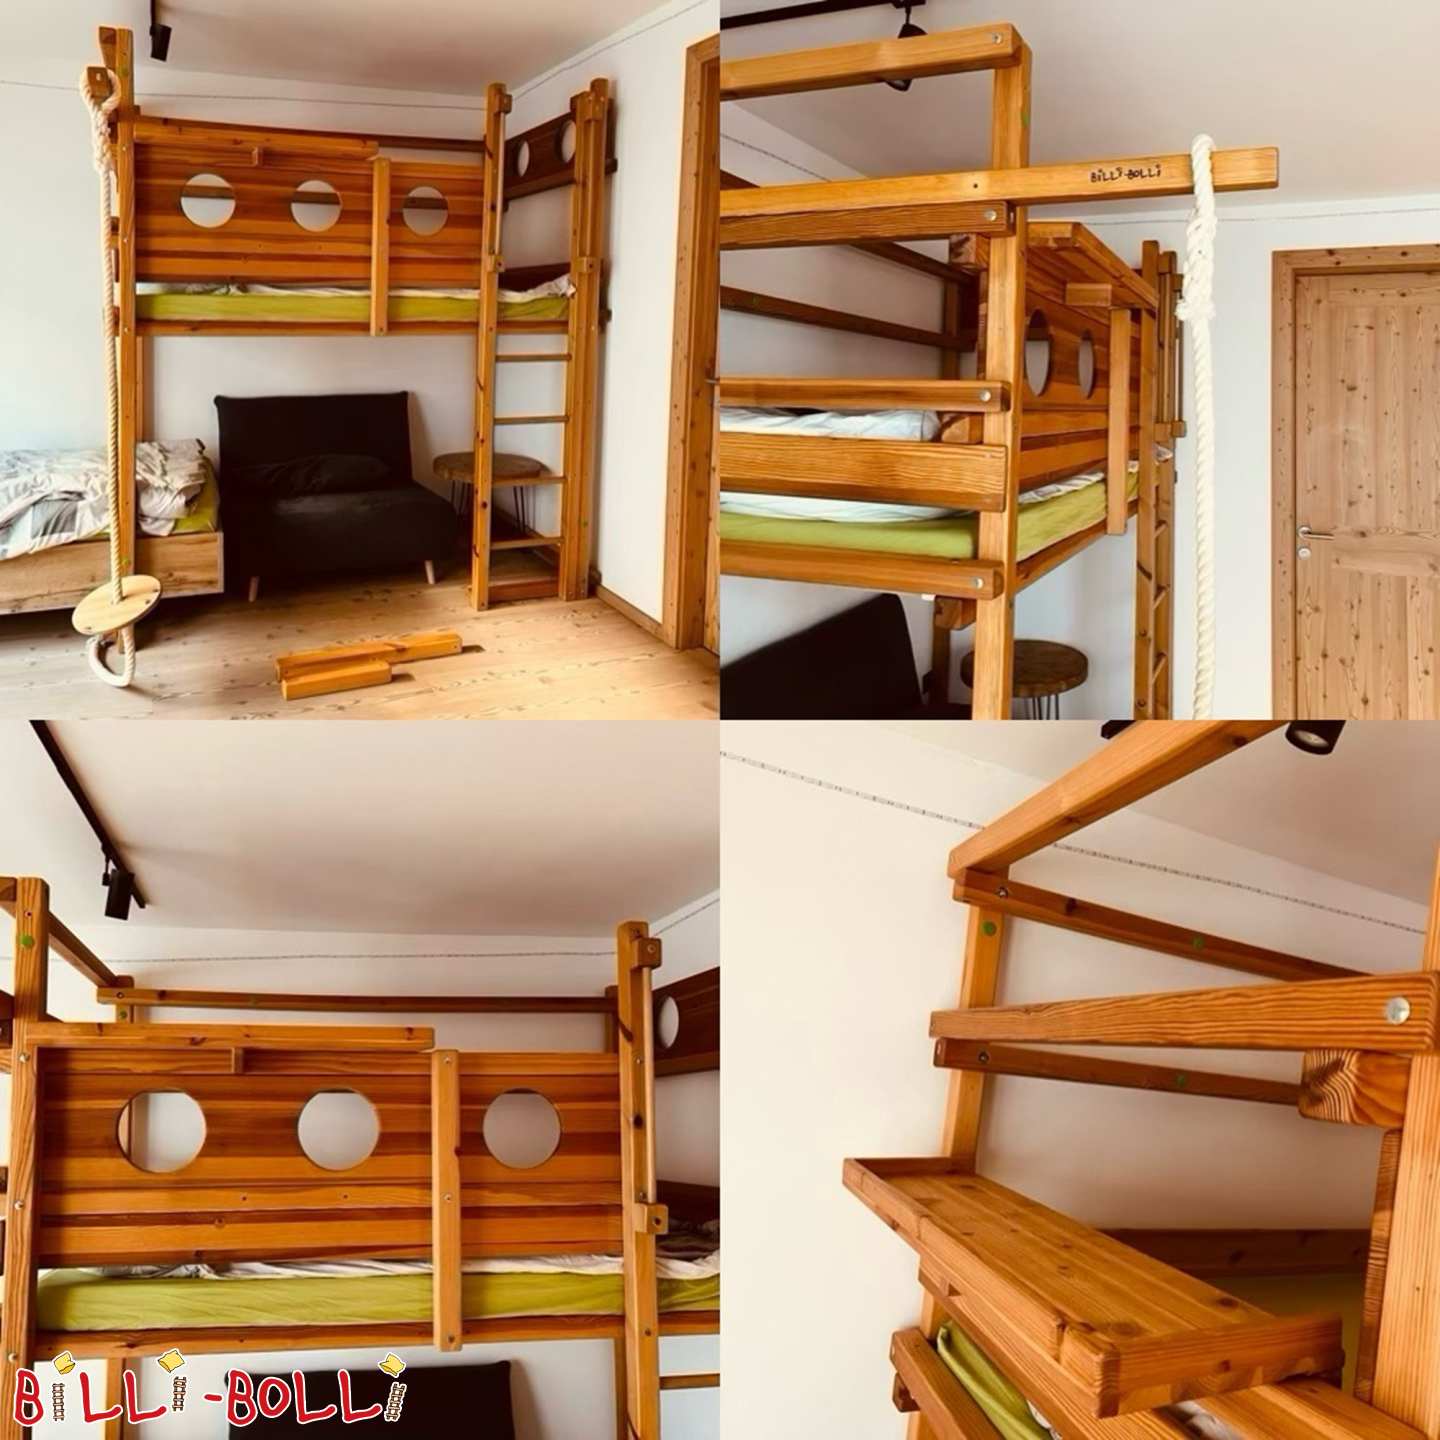 Κρεβάτι σοφίτας που μεγαλώνει μαζί με το παιδί, 100x200 cm, πολύ ψηλά πόδια και σκάλα (228,5 cm) (Κατηγορία: Κρεβάτι σοφίτας μεγαλώνει με το παιδί used)